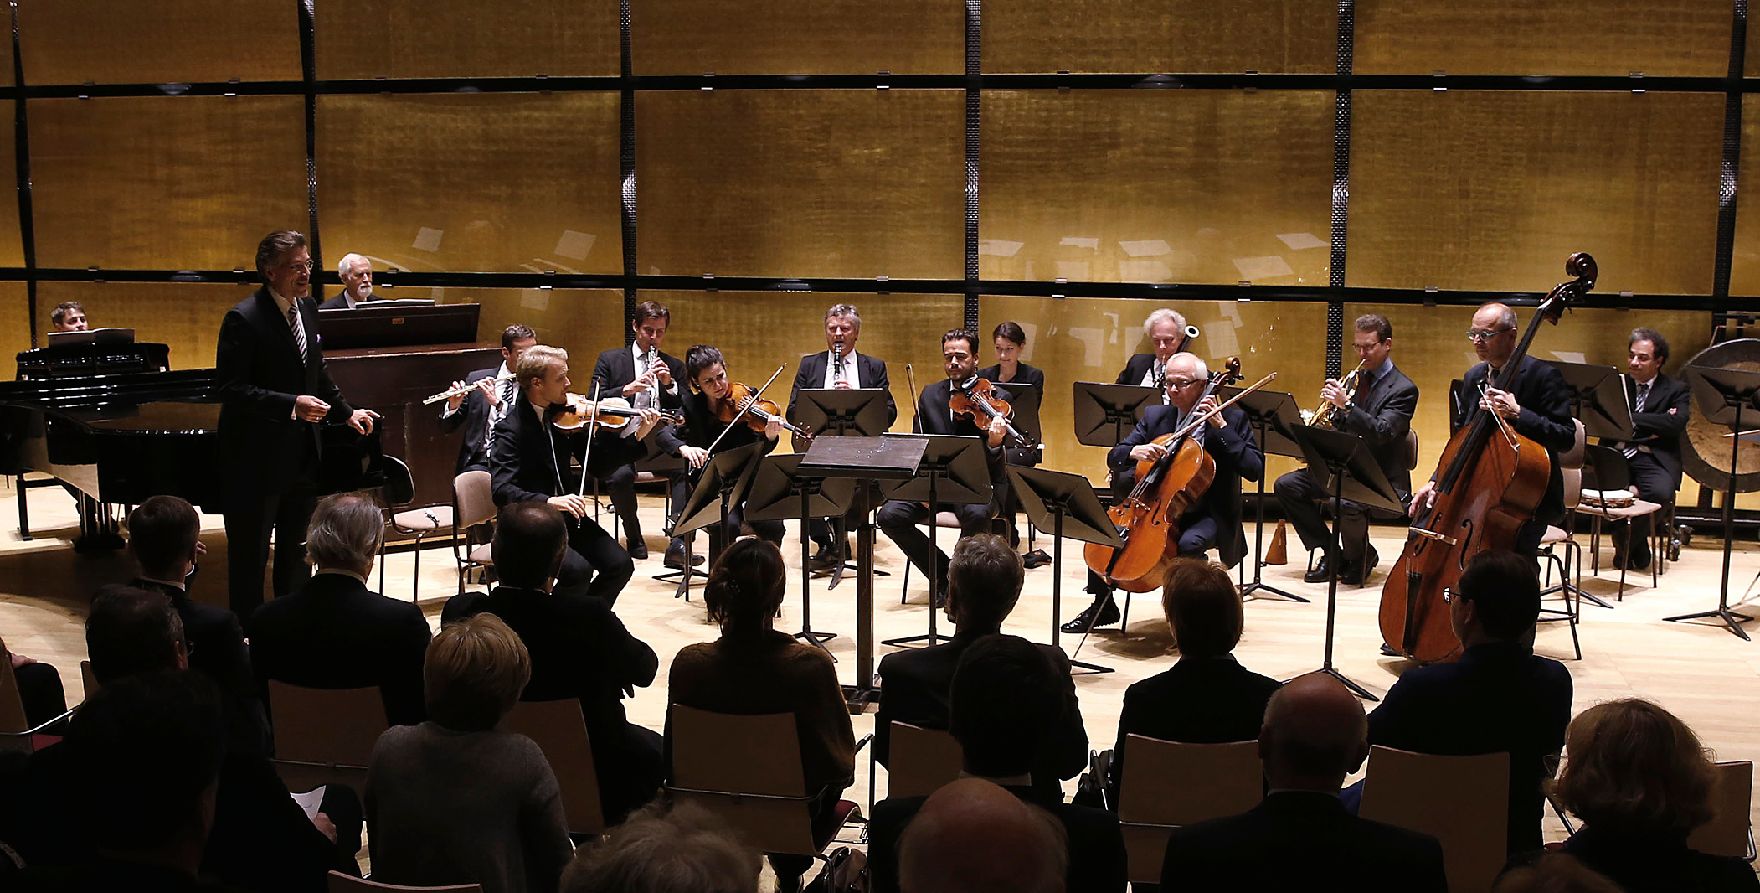 Am 30. Oktober 2015 hielt Kunst- und Kulturminister Josef Ostermayer eine Rede anlässlich der 60-Jahr-Feier der Internationalen Gustav Mahler Gesellschaft.